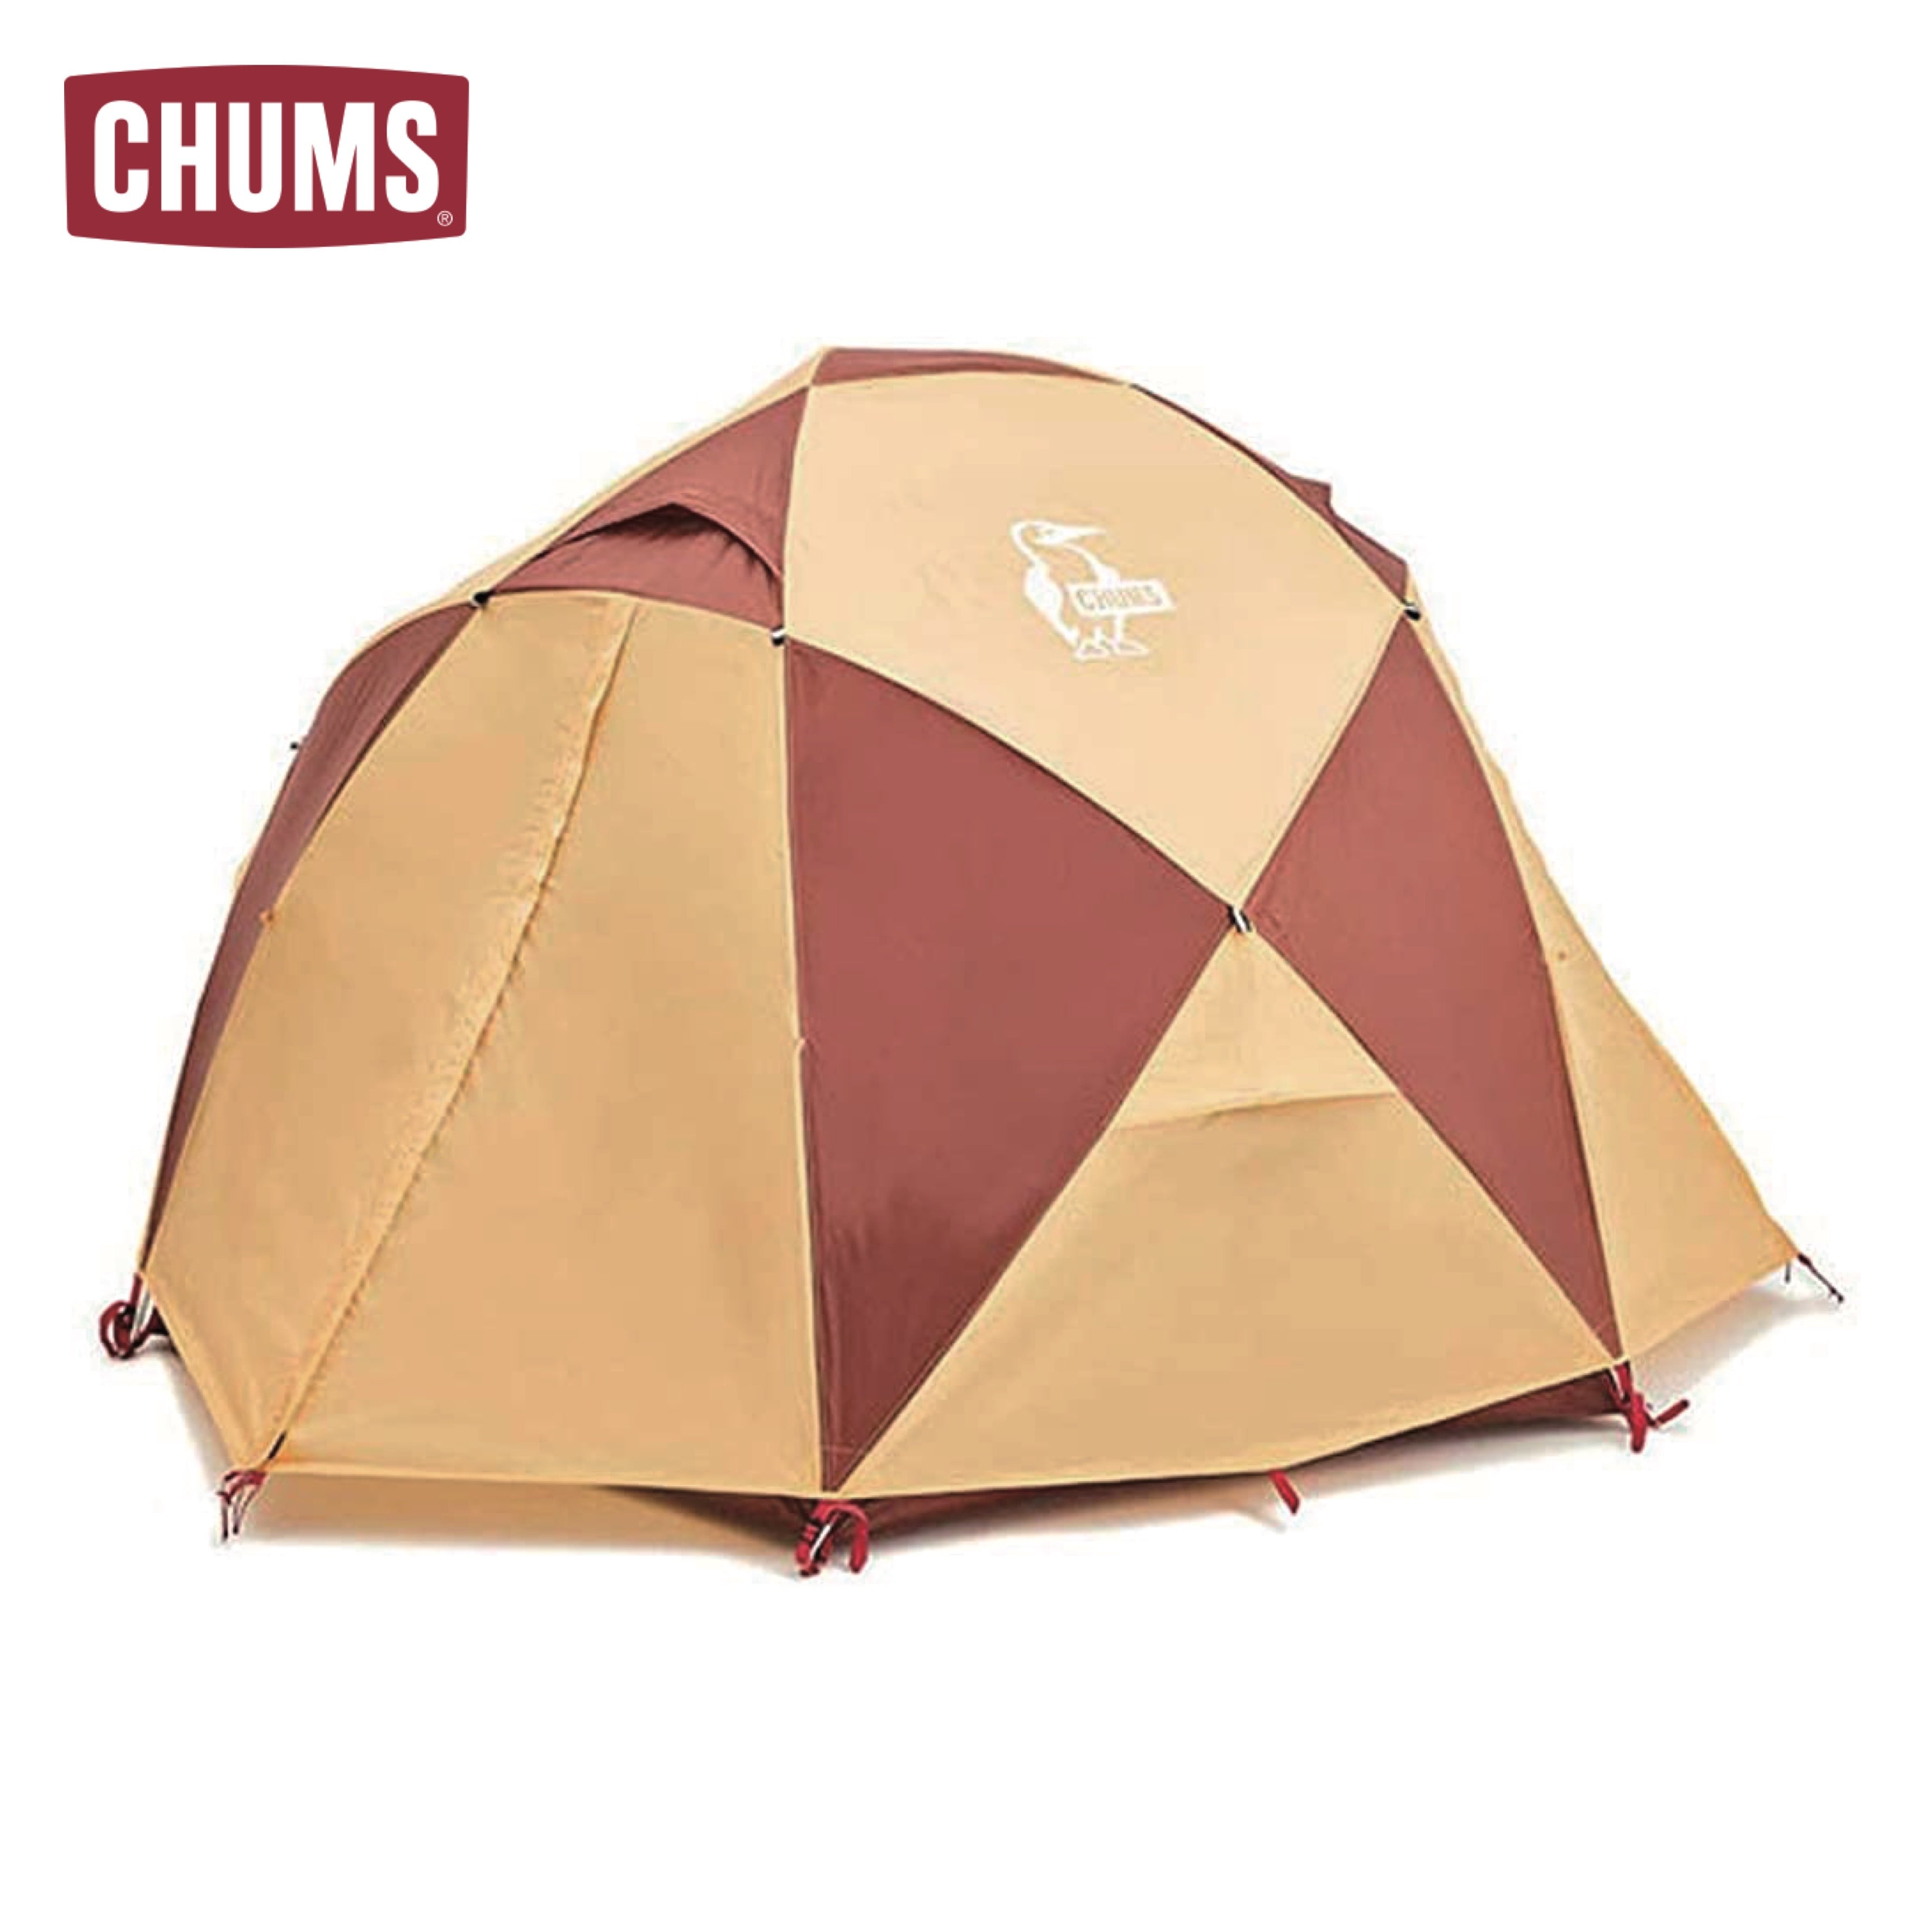 【新品・未使用】CHUMS チャムス テント ドーム型 アウトドア